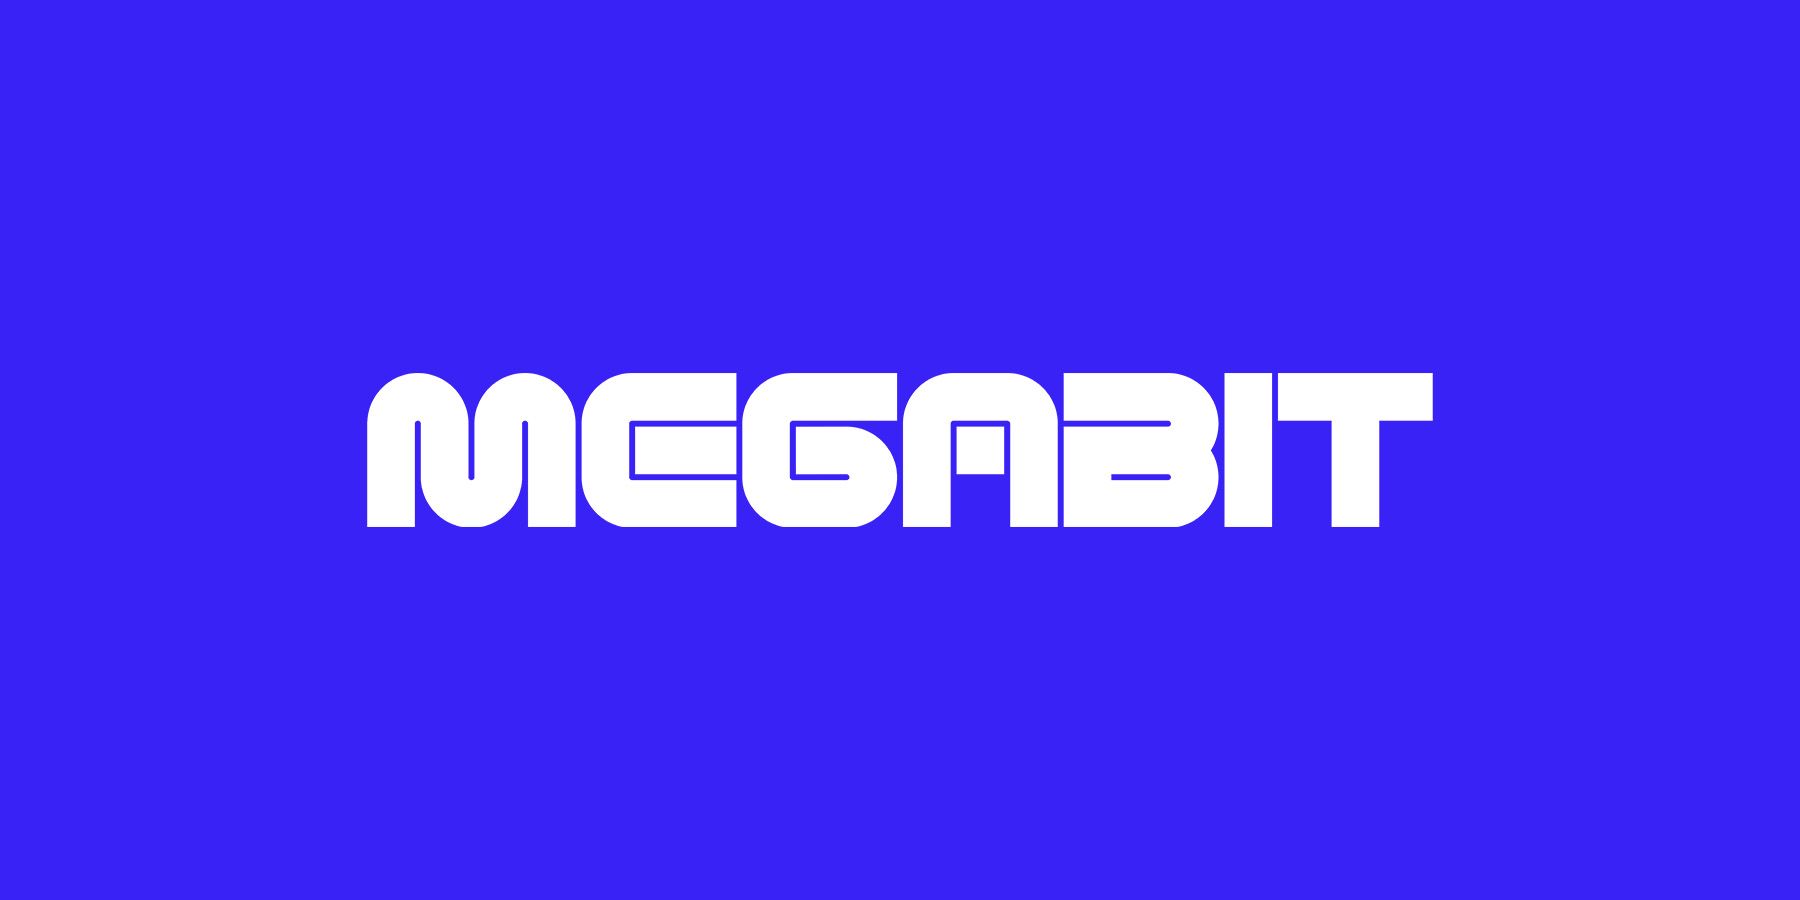 Объявлен новый издатель Megabit, который будет поддерживать Spector's Otherside Entertainment